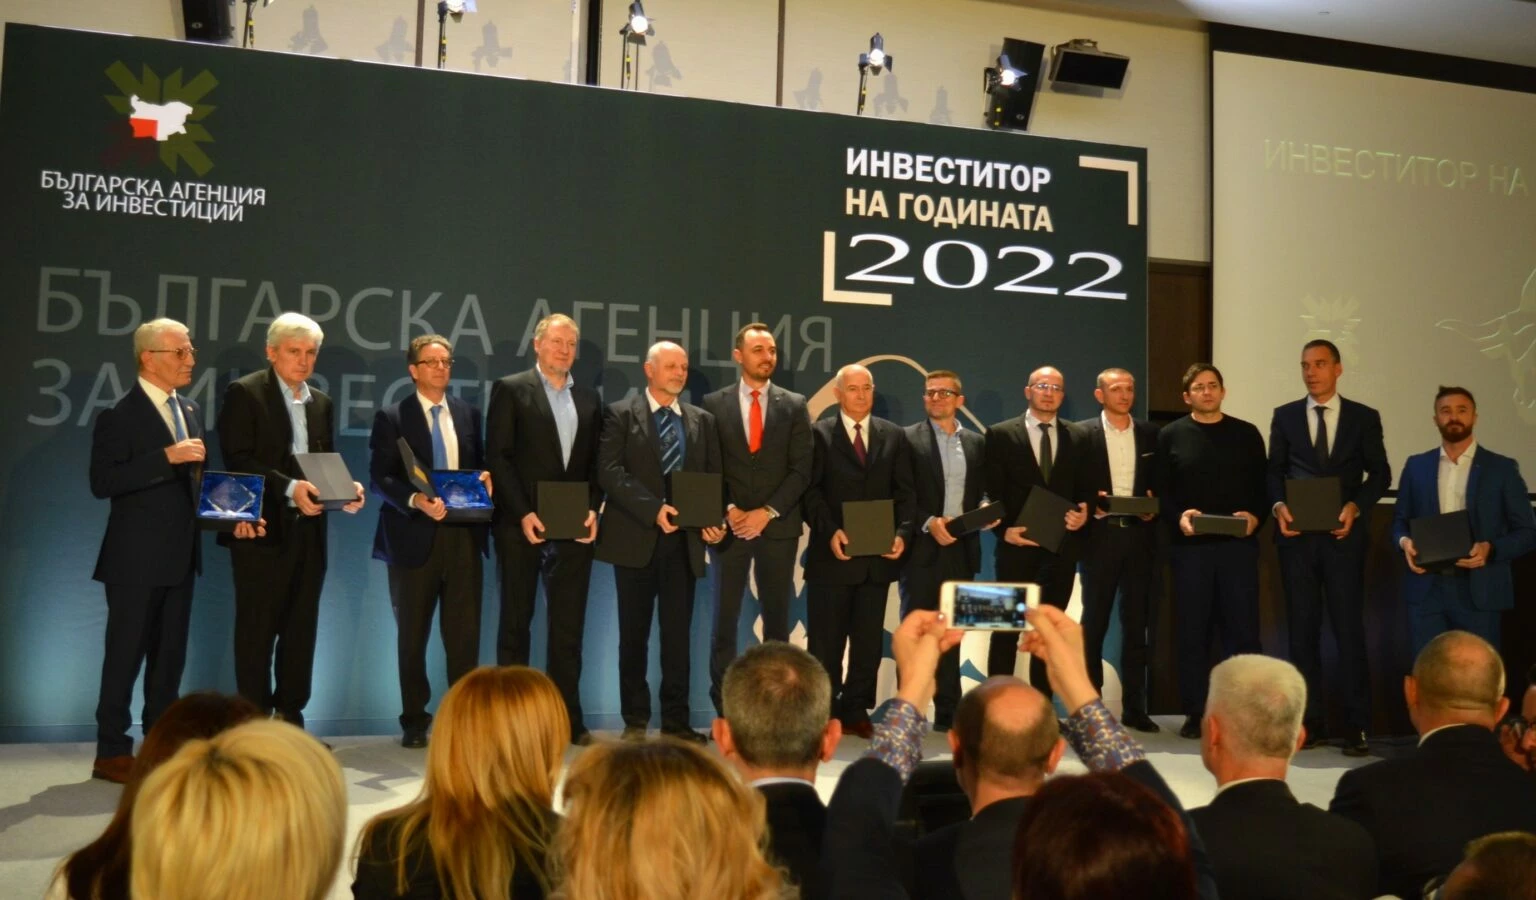 Алкомет АД - Шумен стана Инвеститор на годината - 2022